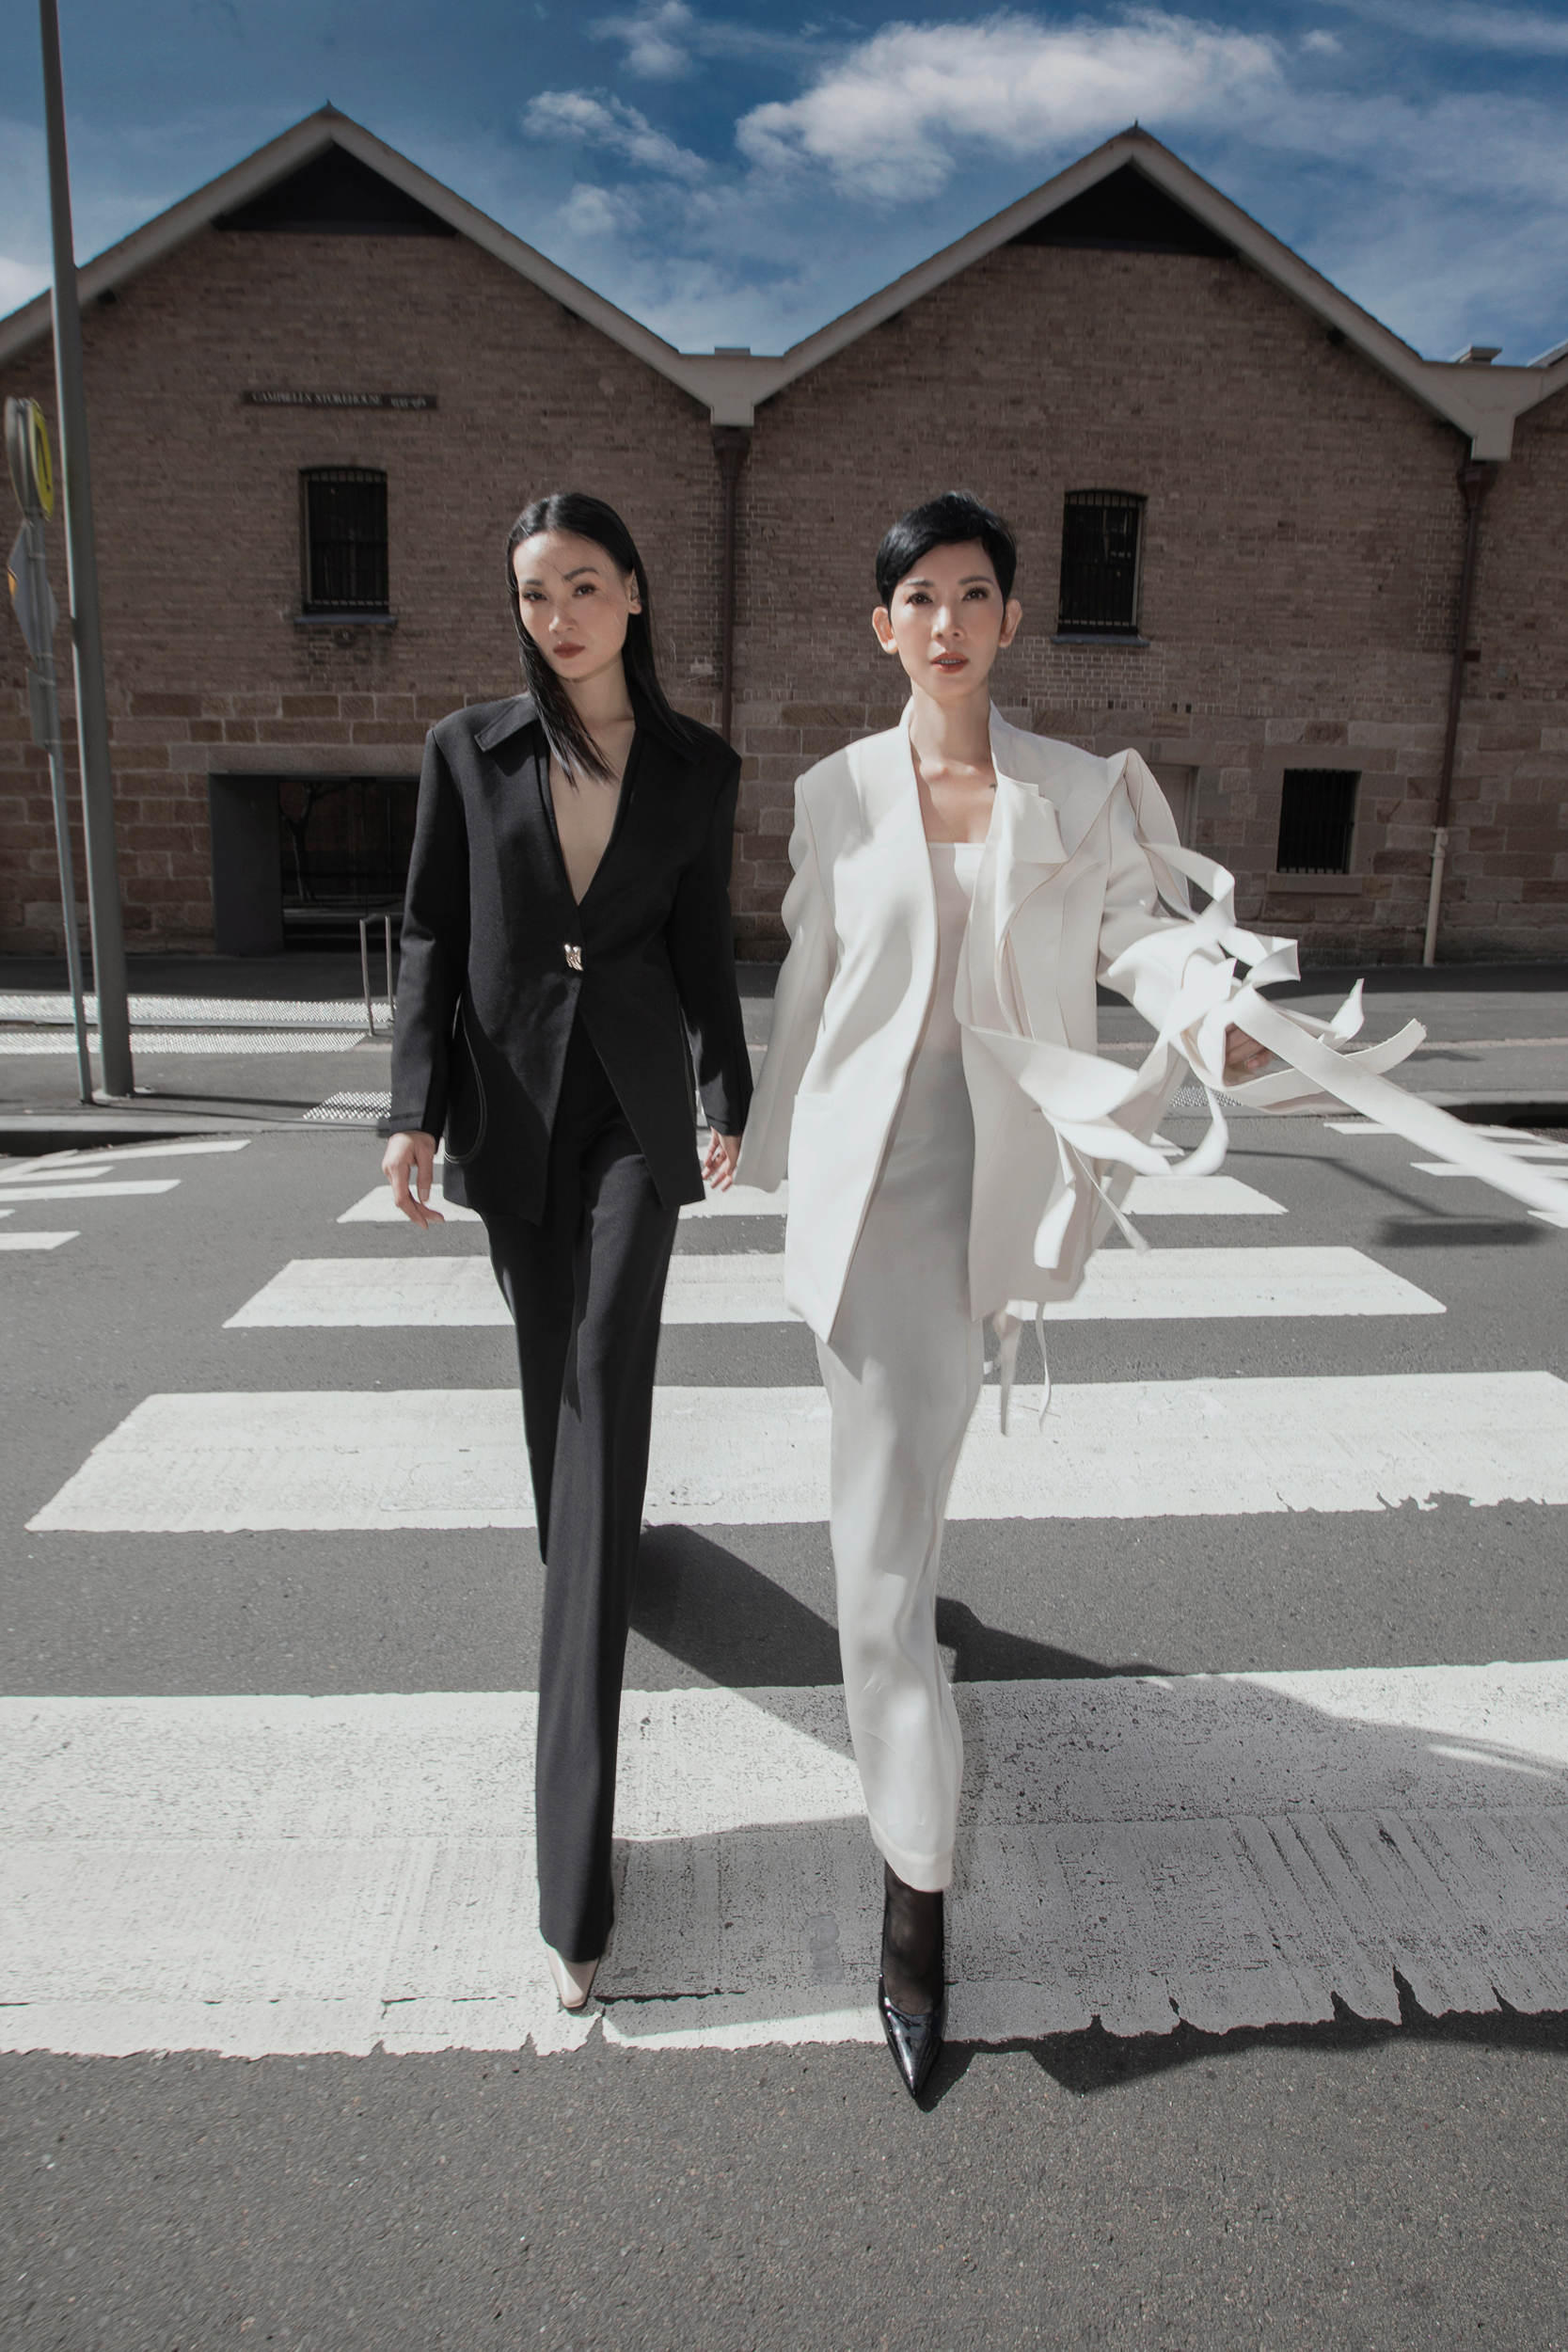 Giữa đường phố Sydney, thầy trò siêu mẫu Xuân Lan - Thuỳ Trang đã thể hiện tinh thần các mẫu thiết kế thời trang một cách tự do và thoải mái nhất.